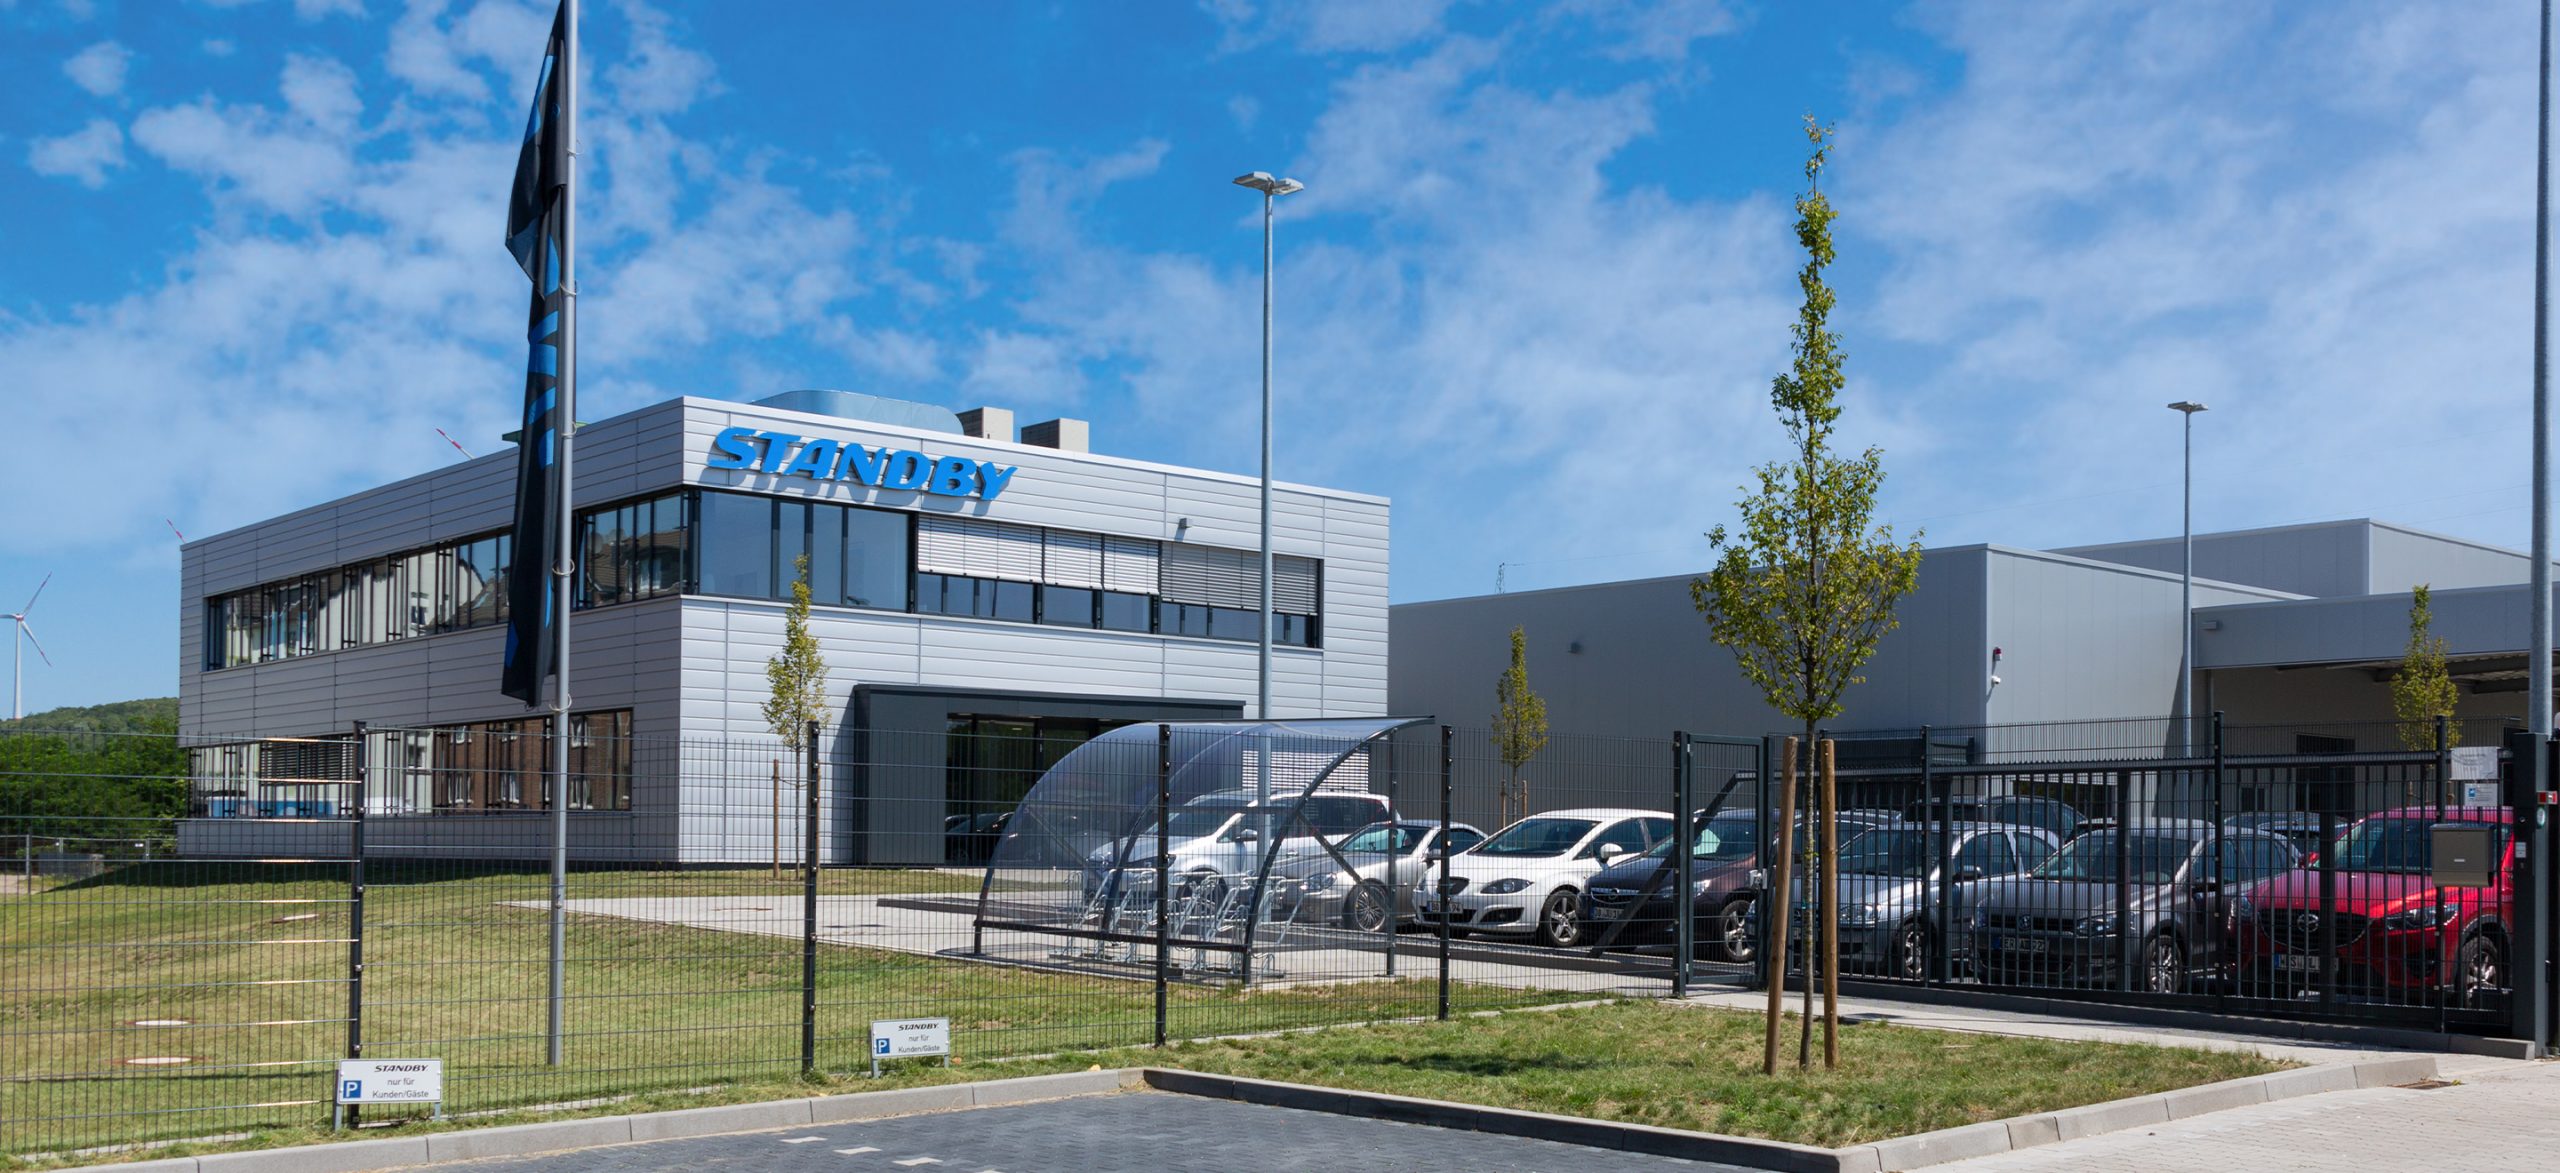 Das Gebäude der Standby GmbH